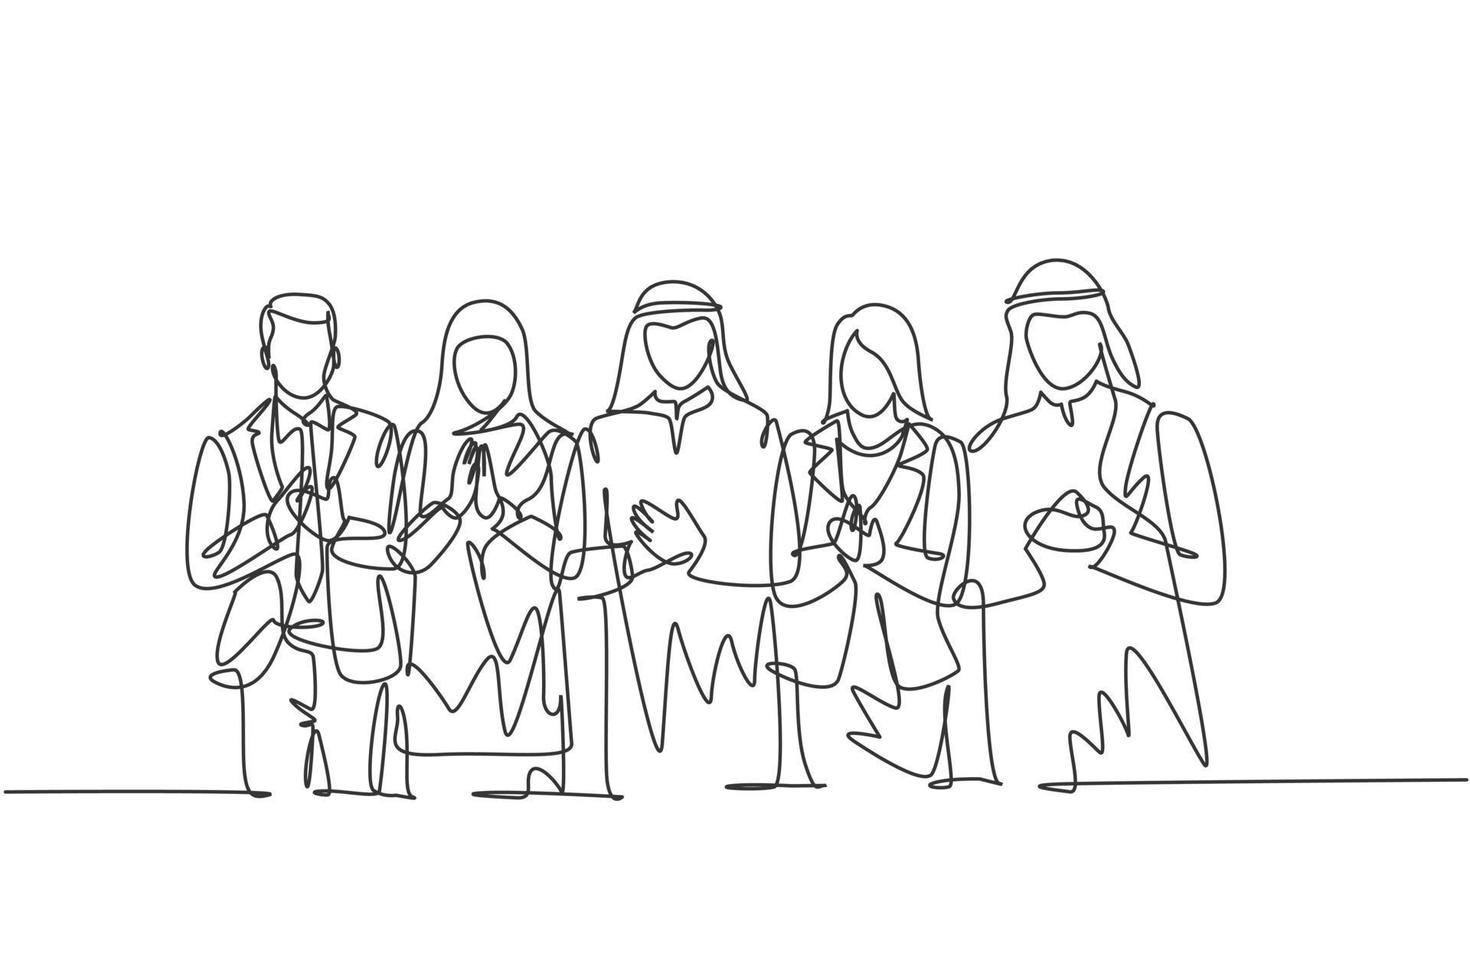 un disegno a tratteggio continuo di giovani uomini d'affari e donne d'affari in fila insieme battendo le mani. abbigliamento islamico shemag, hijab, sciarpa, kefiah. illustrazione vettoriale di disegno a linea singola